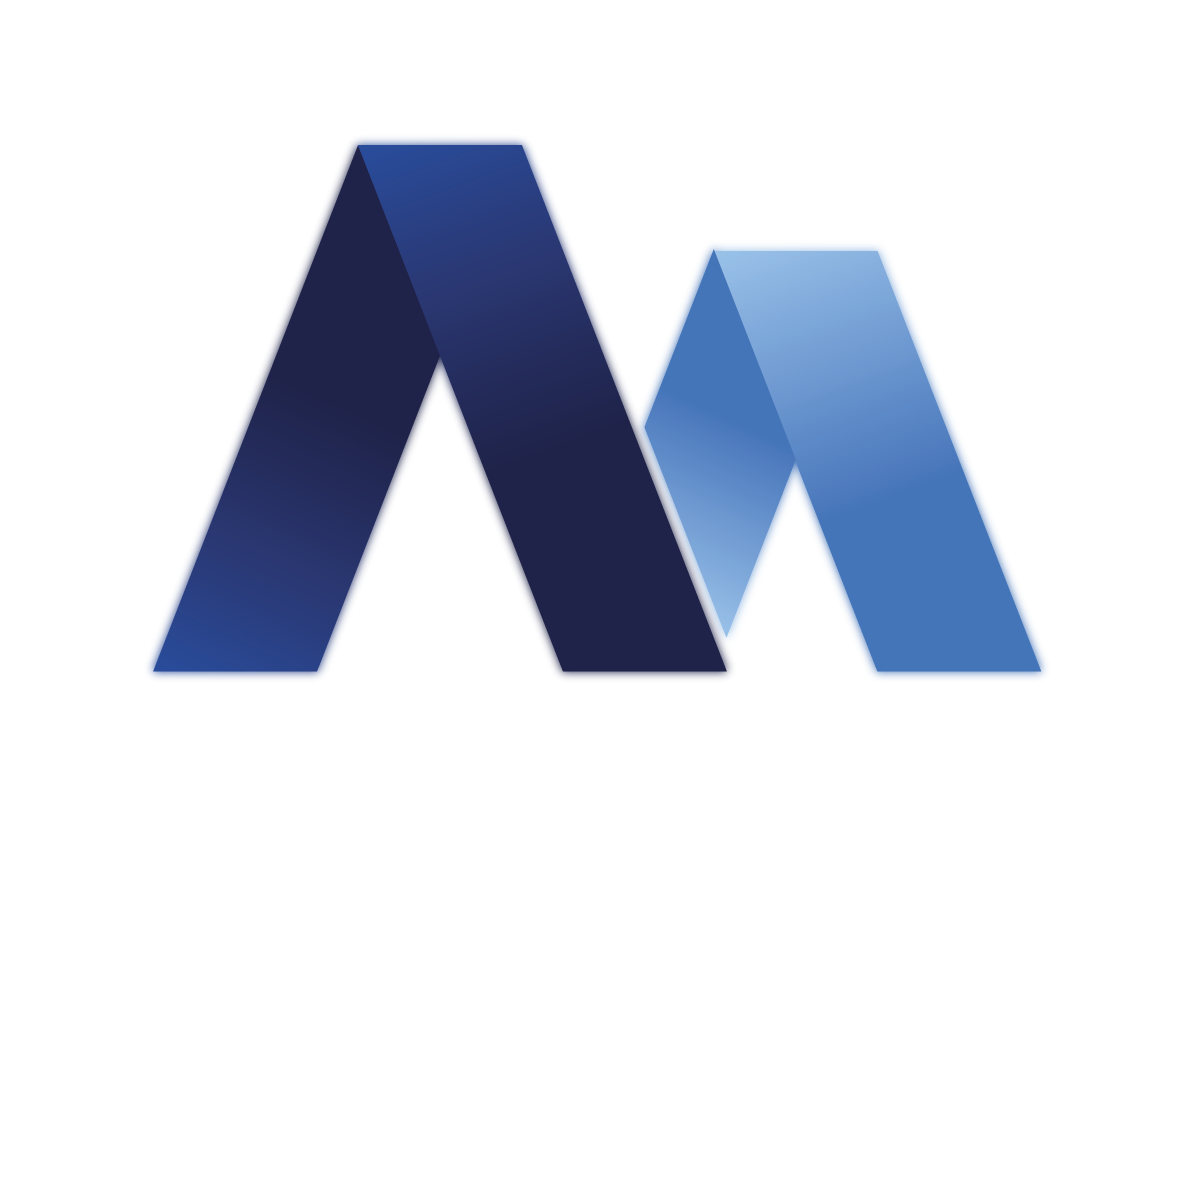 myoact